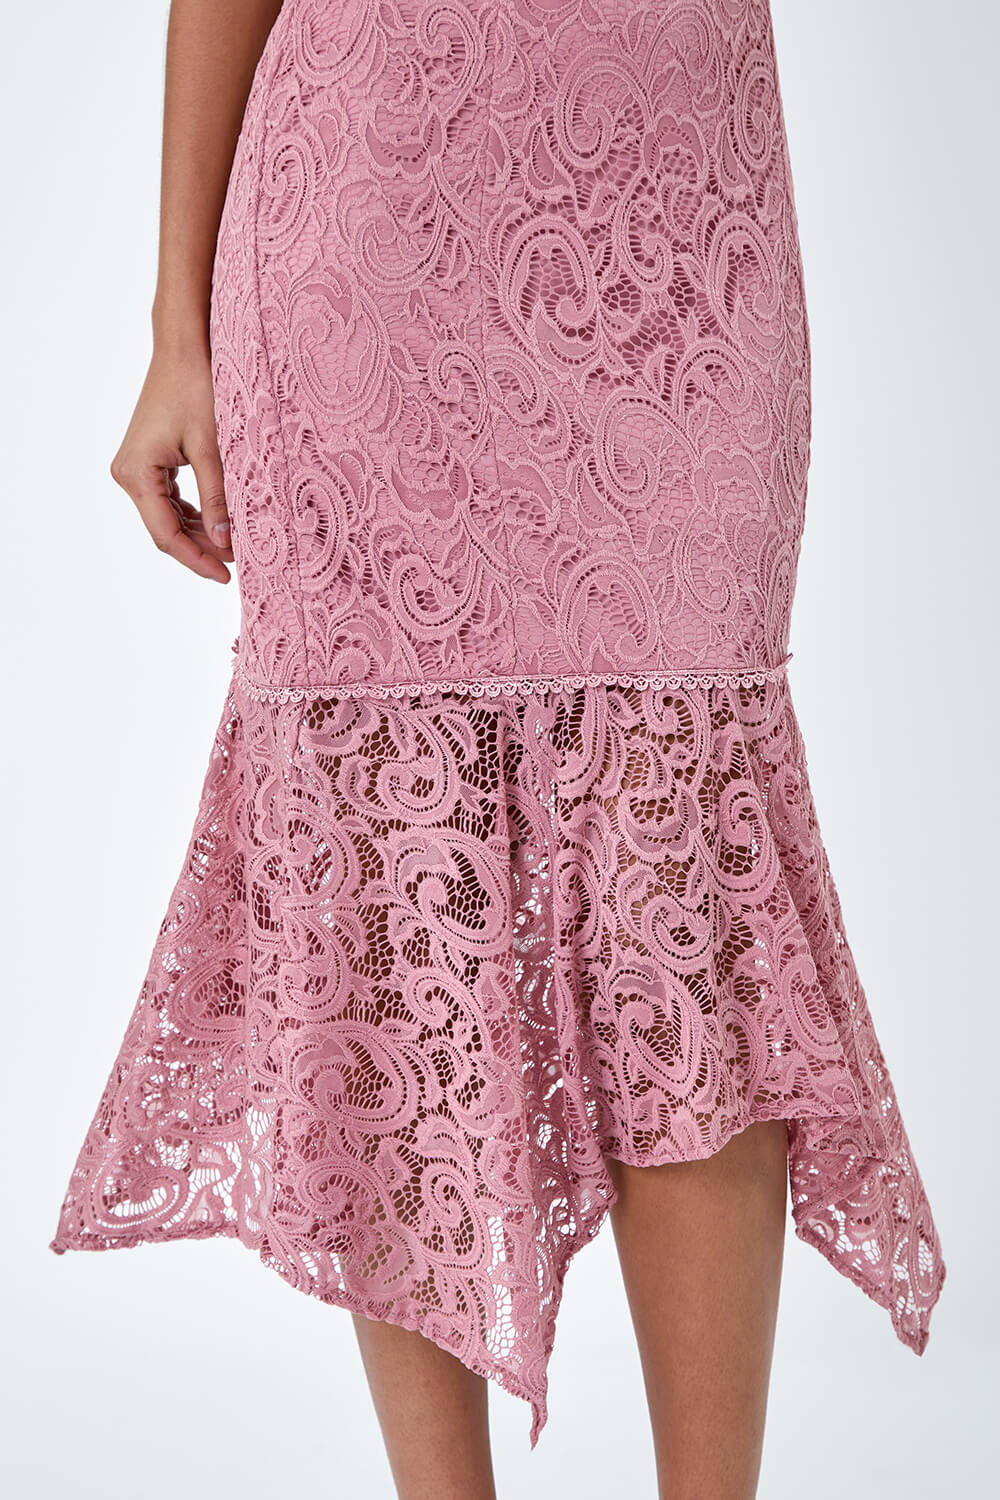 PINK Sleeveless Stretch Lace Midi Dress, Image 5 of 6